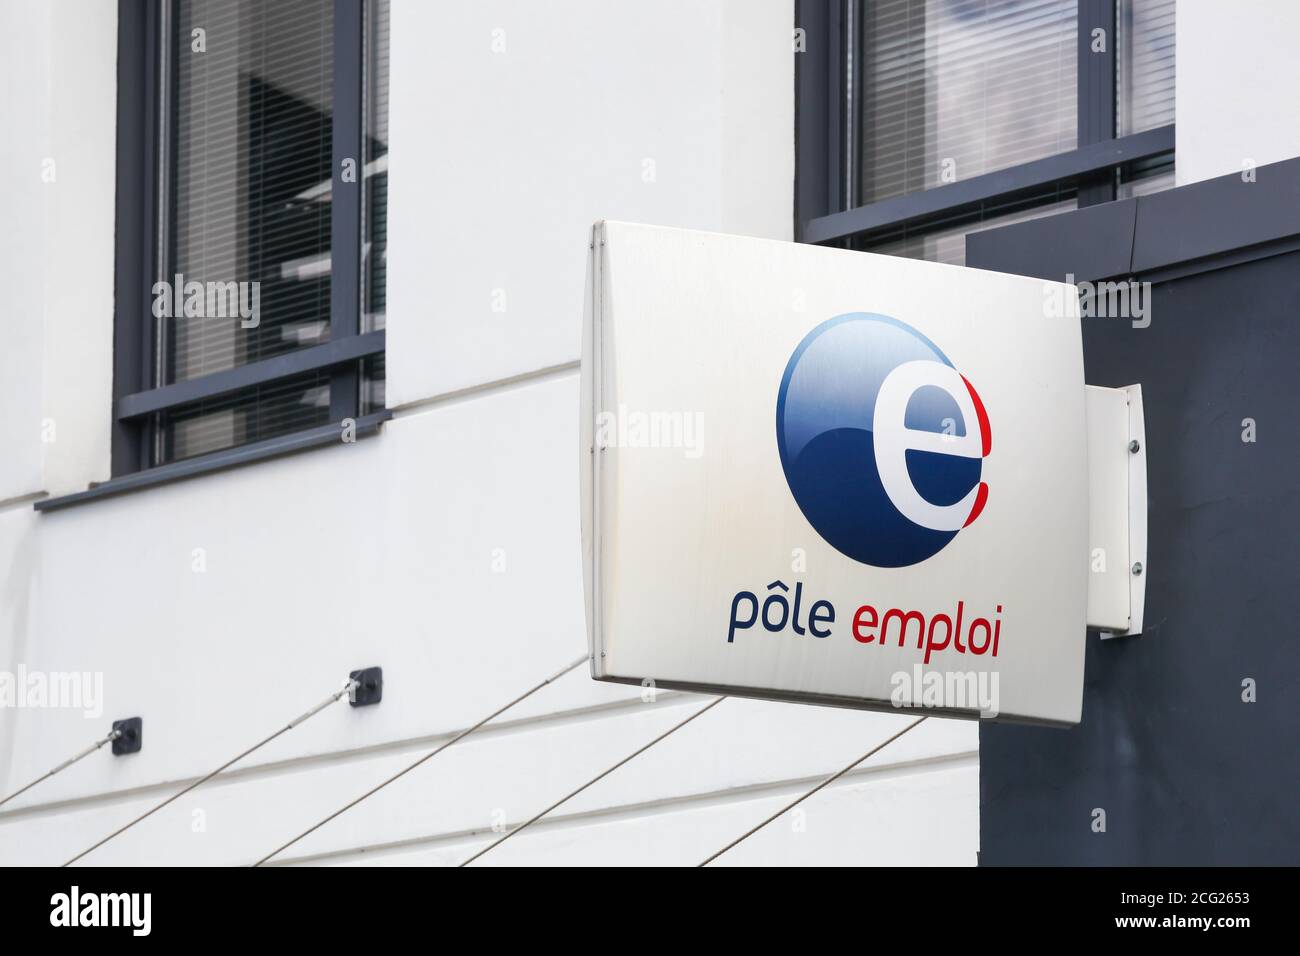 Villefranche, Frankreich - 23. August 2020: Polenemploi-Logo auf einem Gebäude. Pole emploi ist eine französische Regierungsbehörde, die Arbeitslose registriert Stockfoto